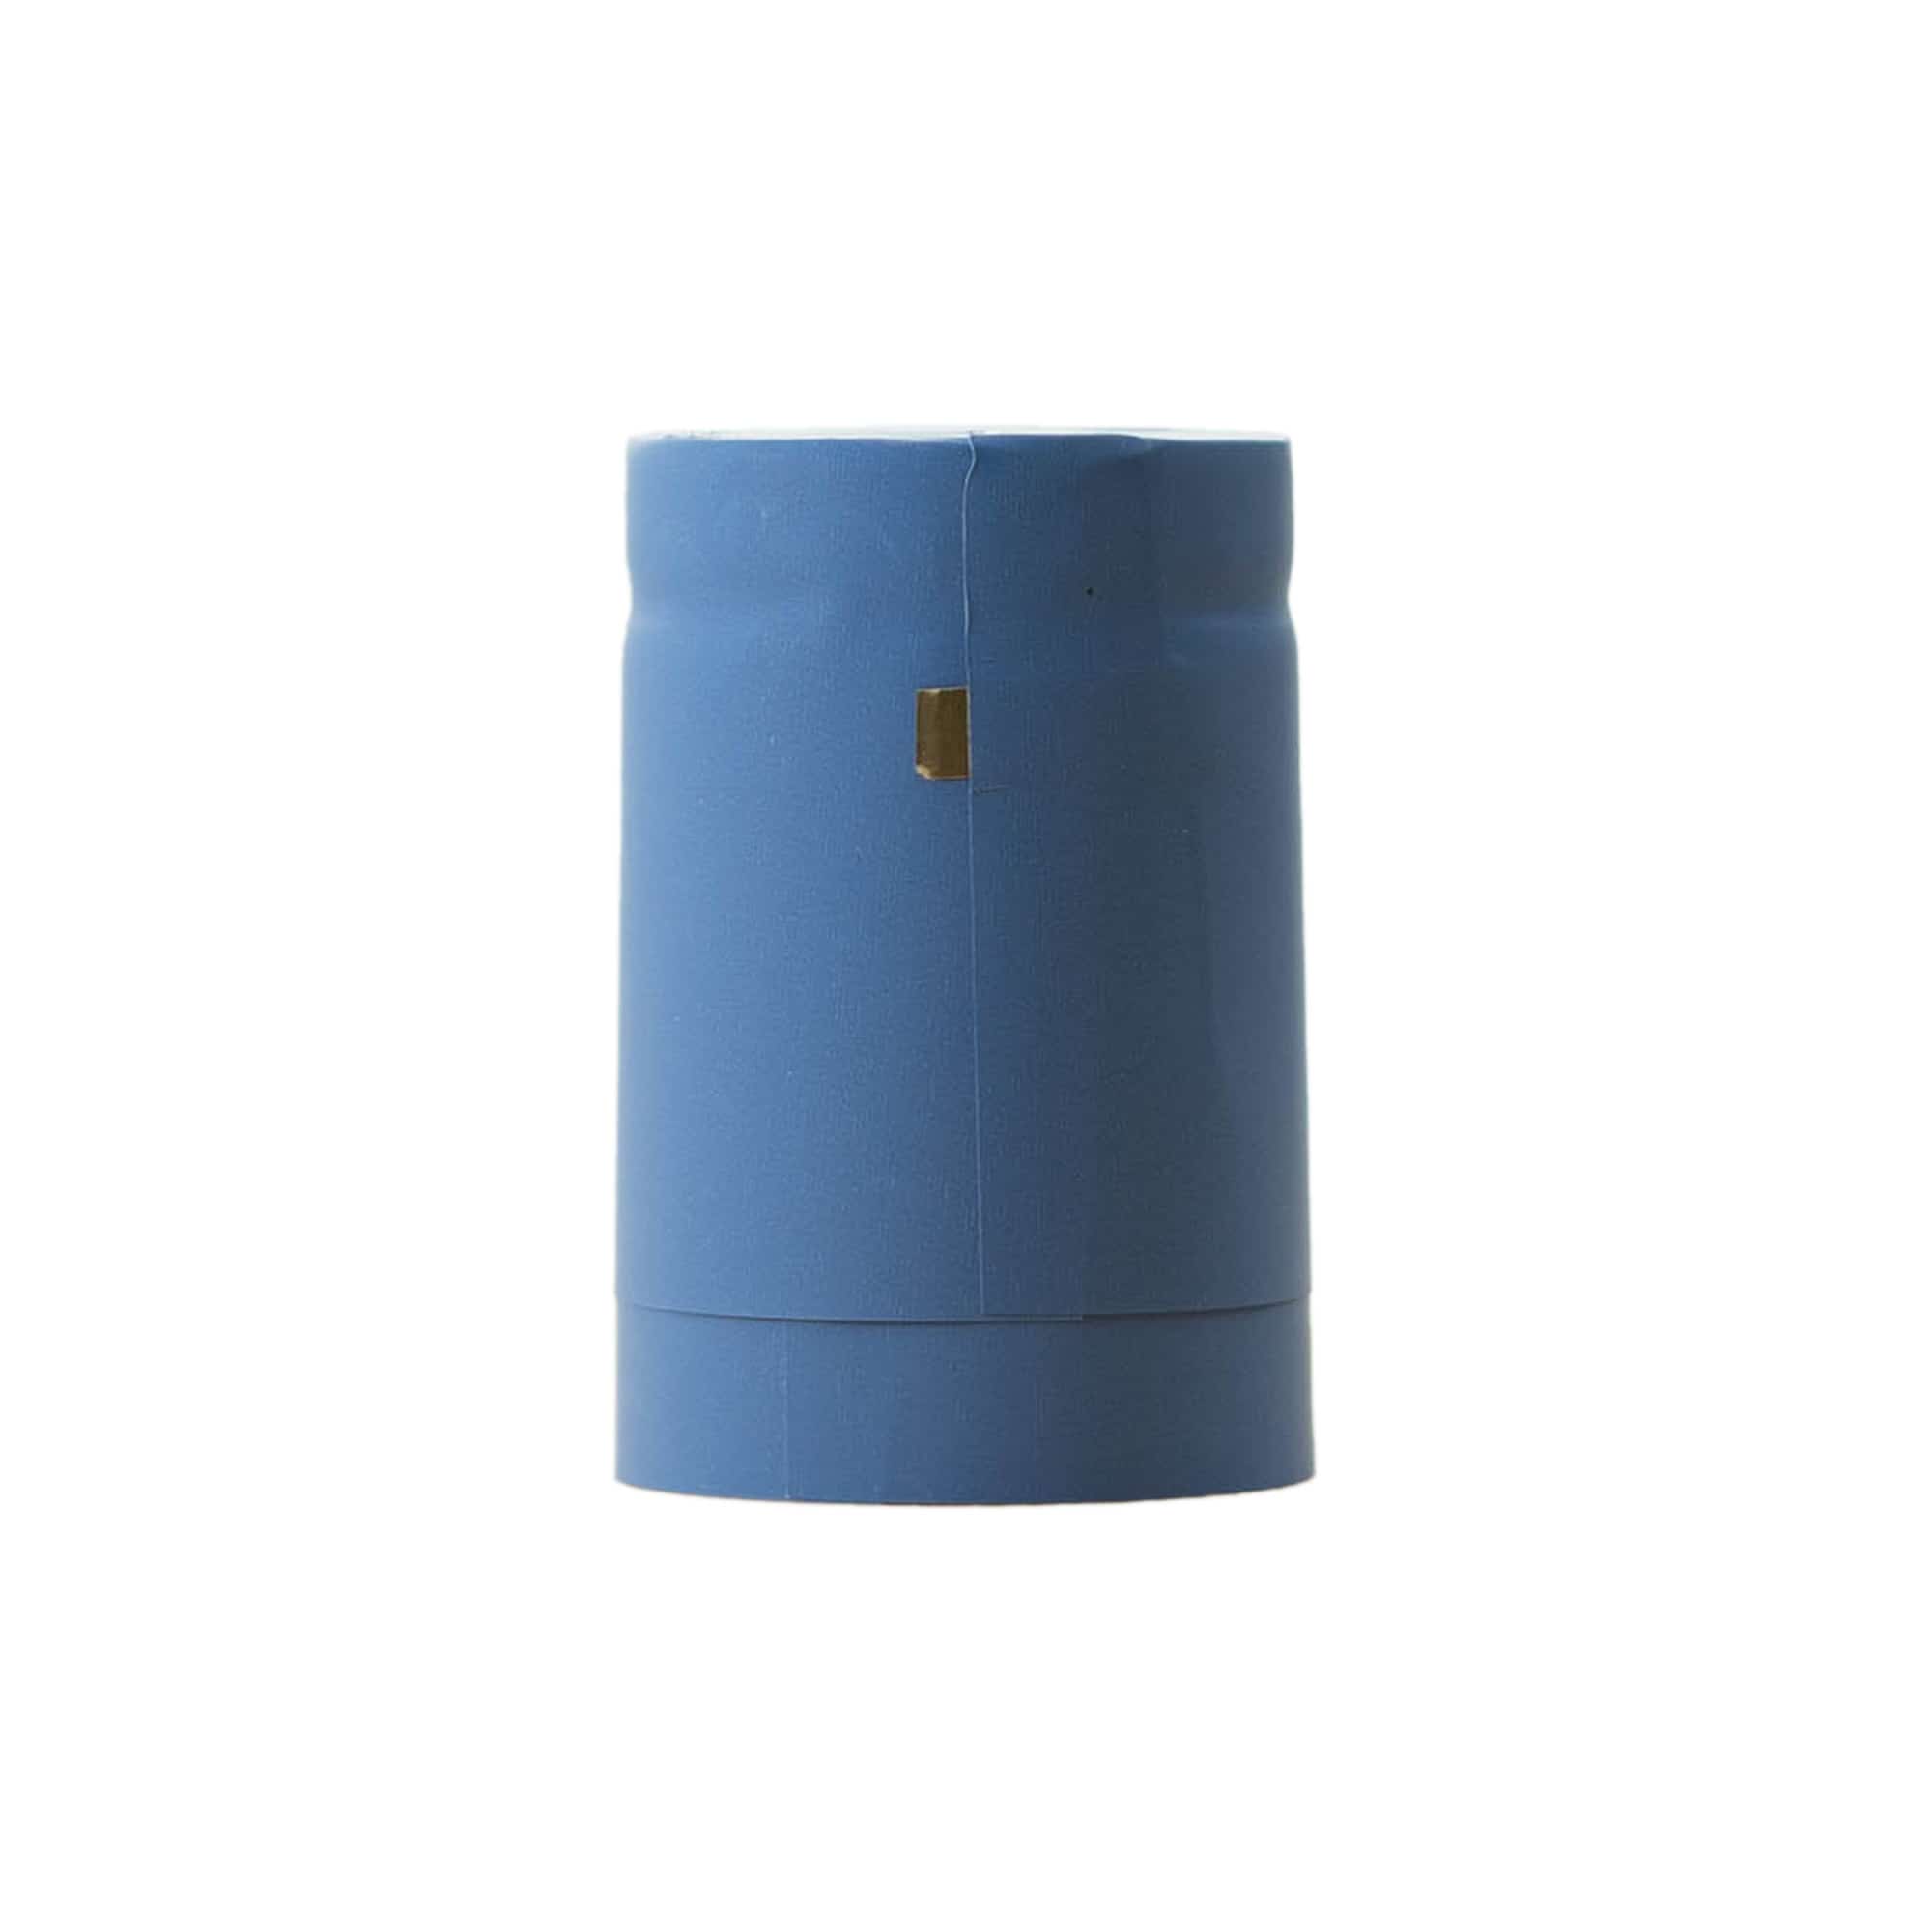 Capsule thermo-rétractable 32x41, plastique PVC, bleu ciel